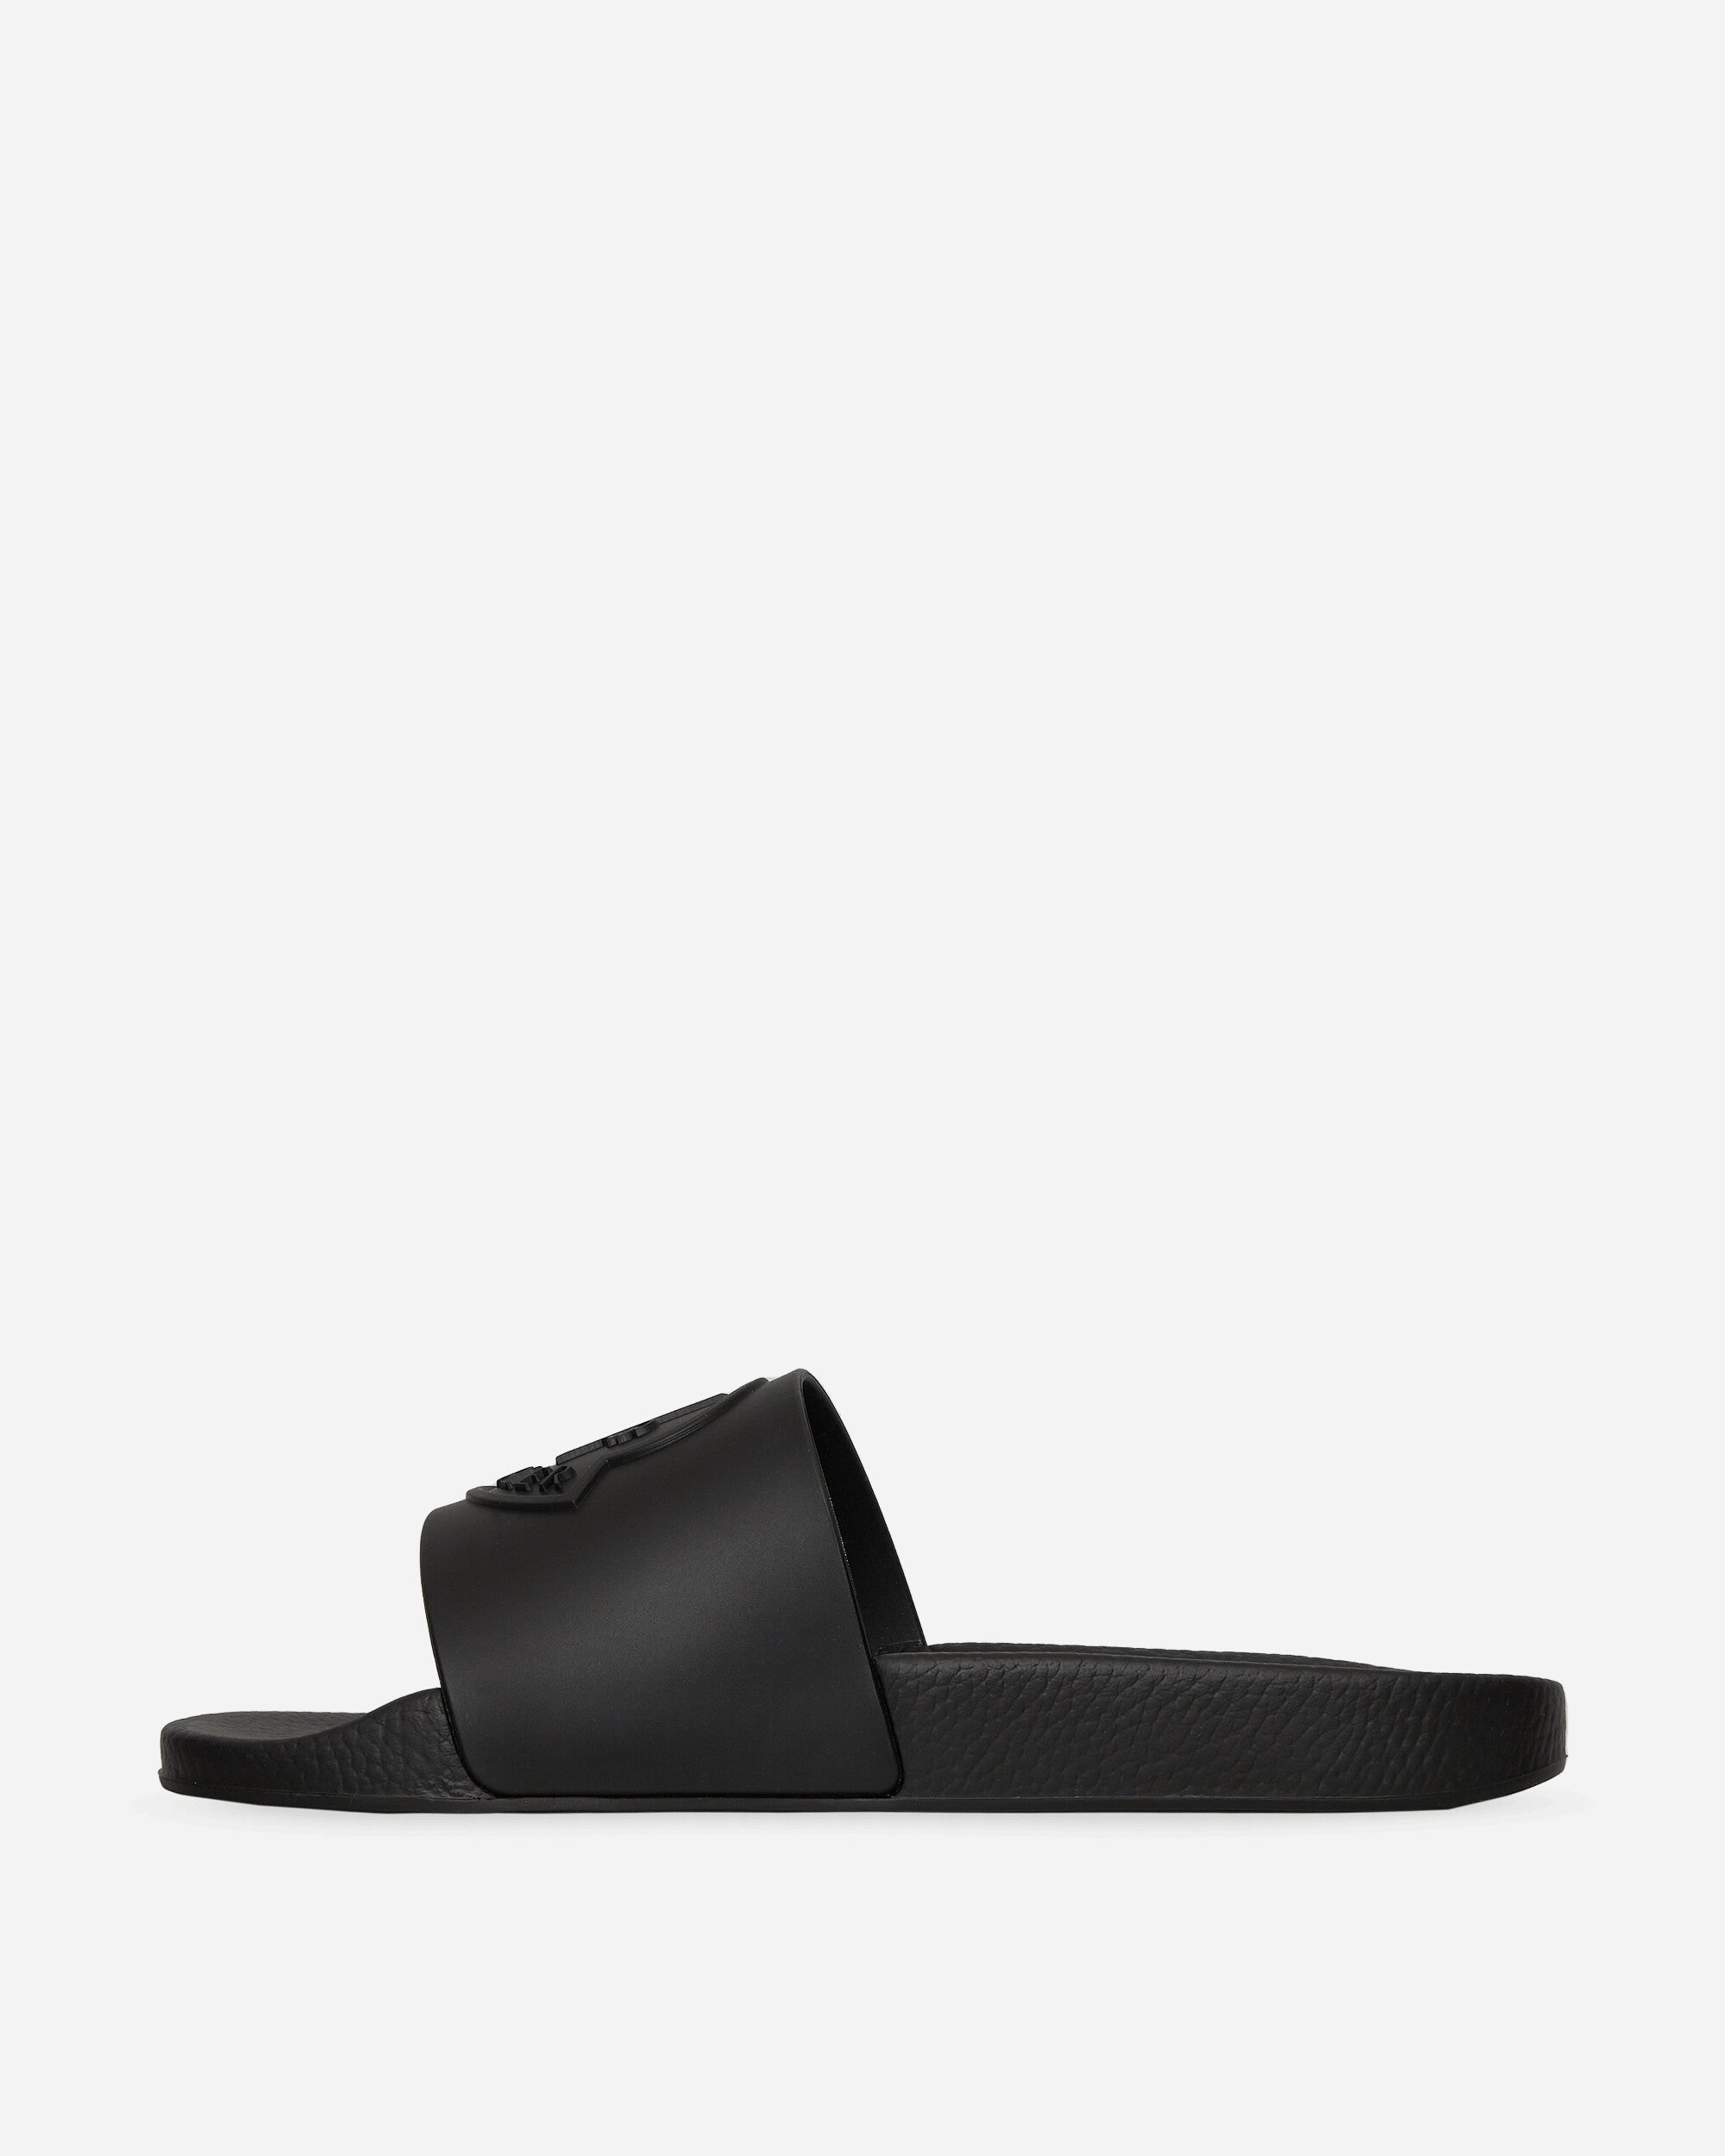 Moncler Basile Slide Black Sandals and Slides Sandal 4C00040M2999 999